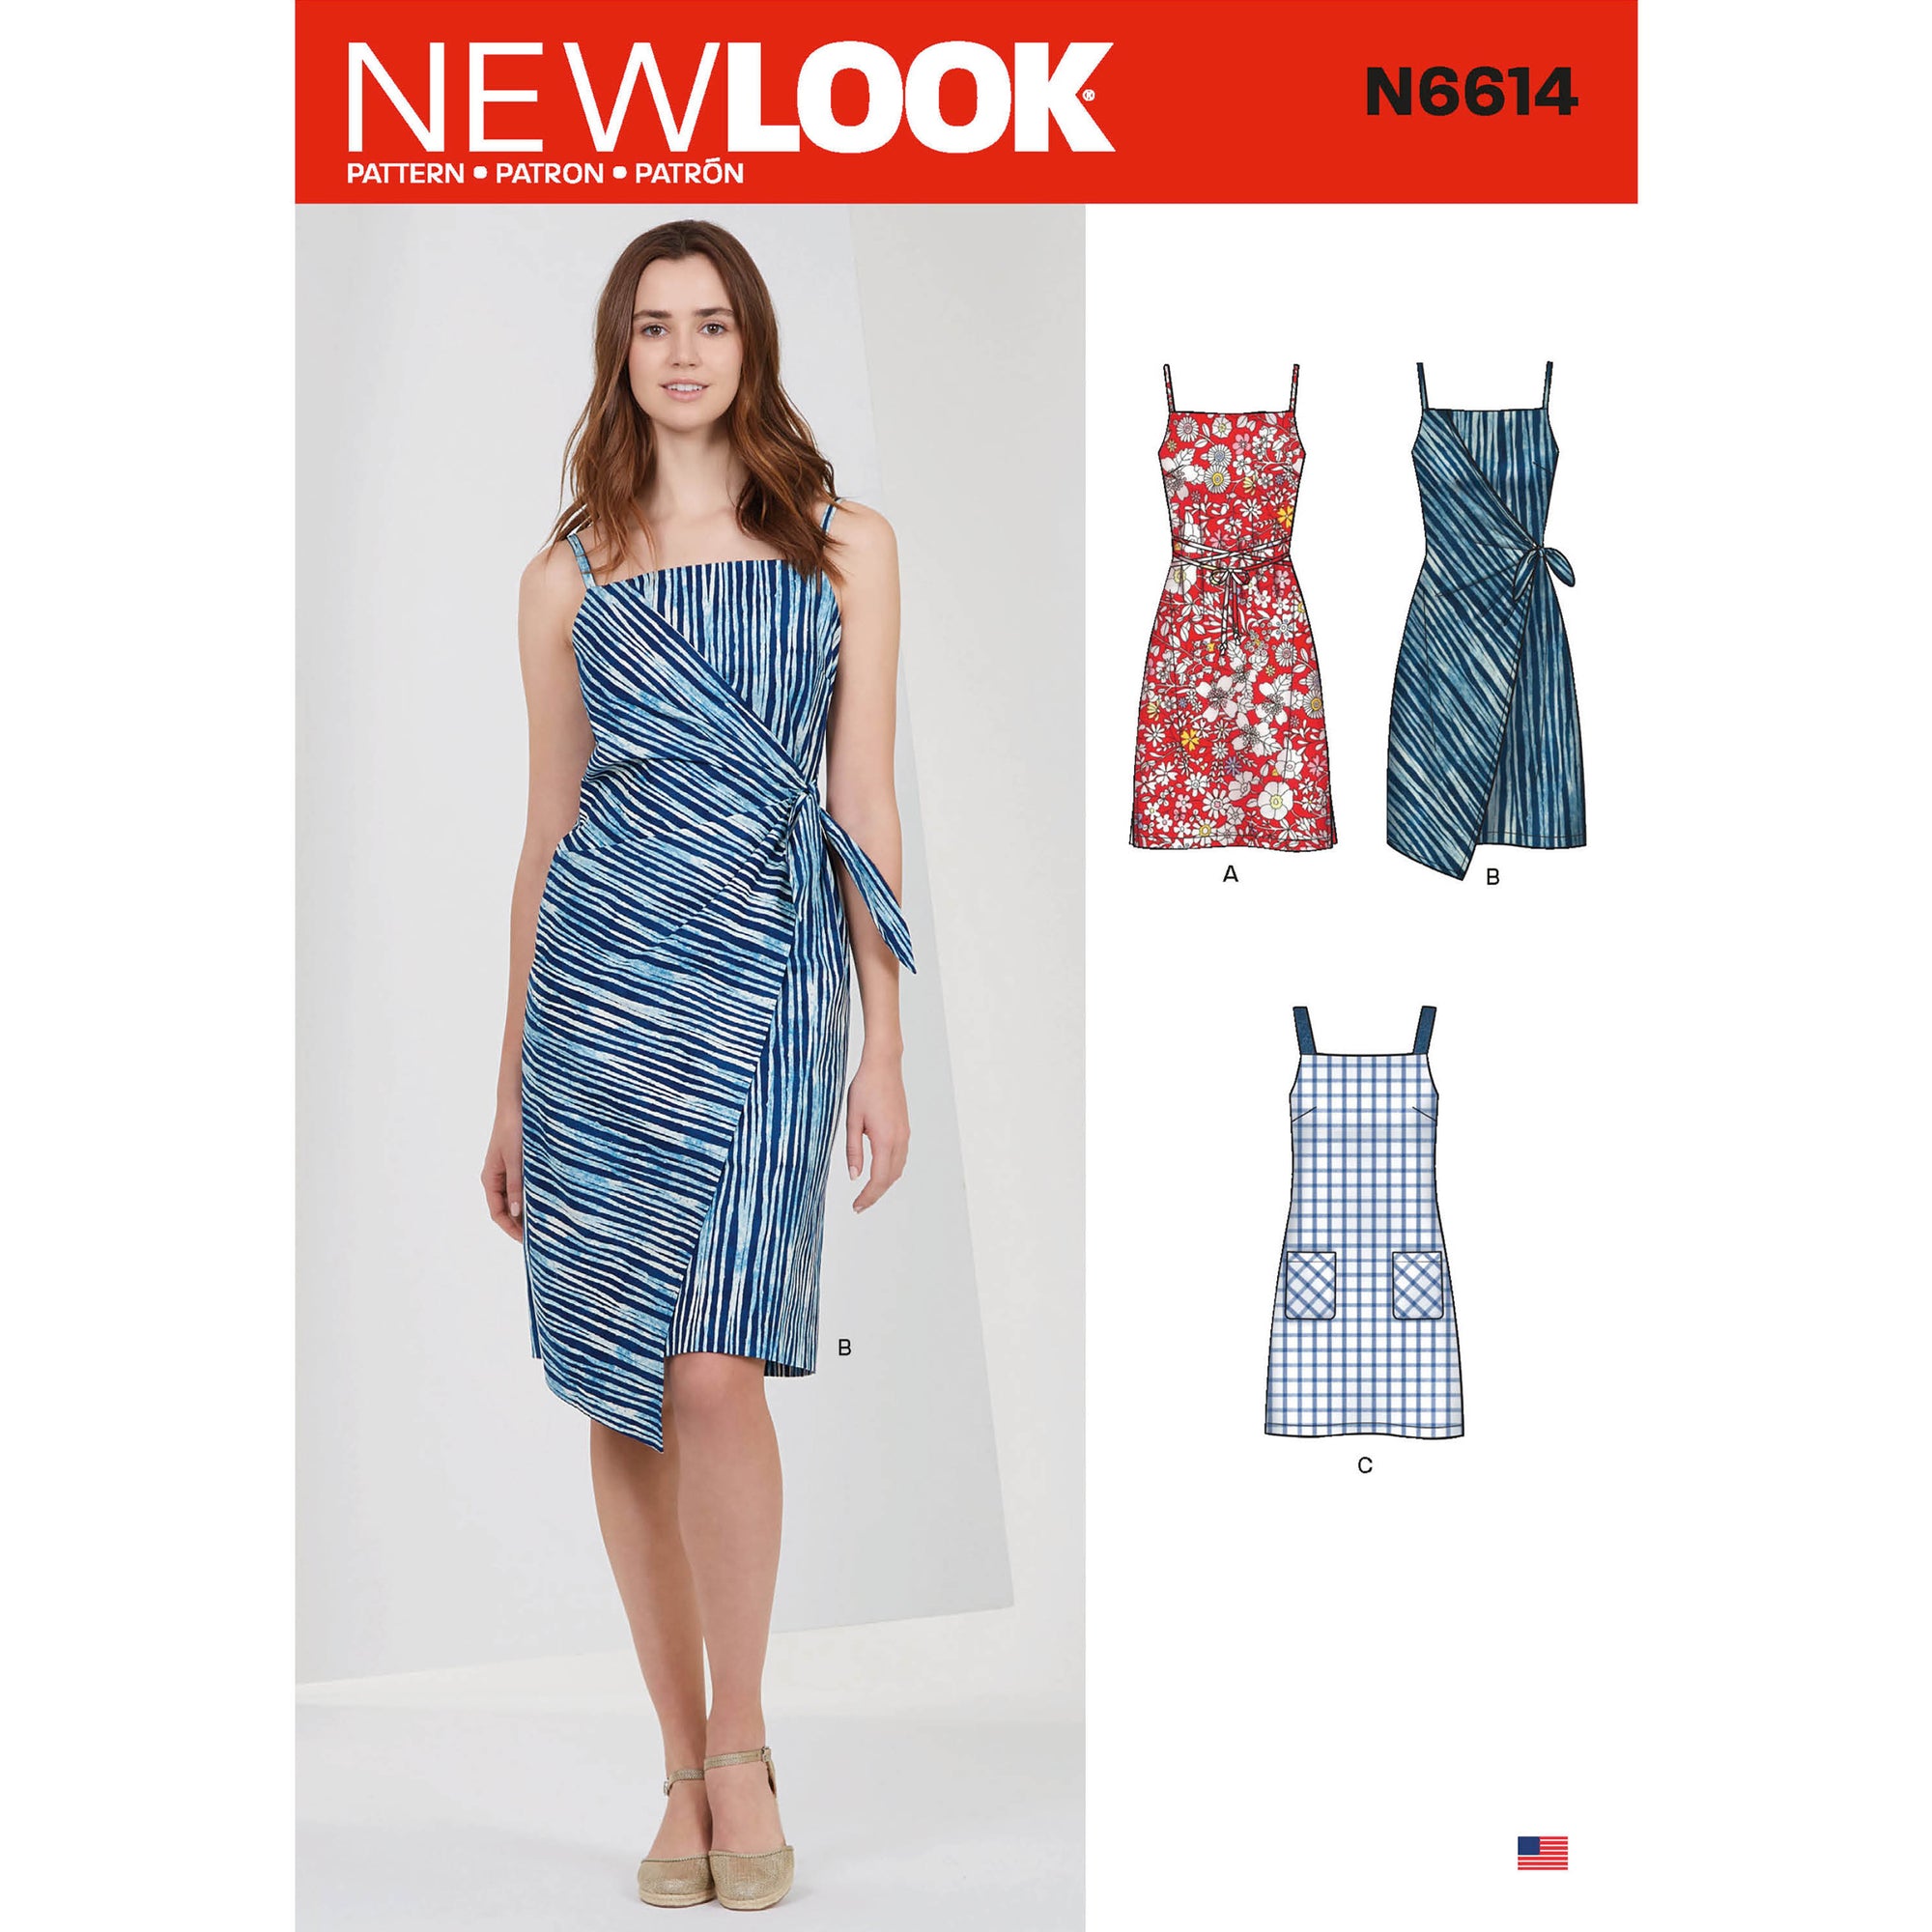 6614 New Look Sewing Pattern N6614 Misses' Dresses